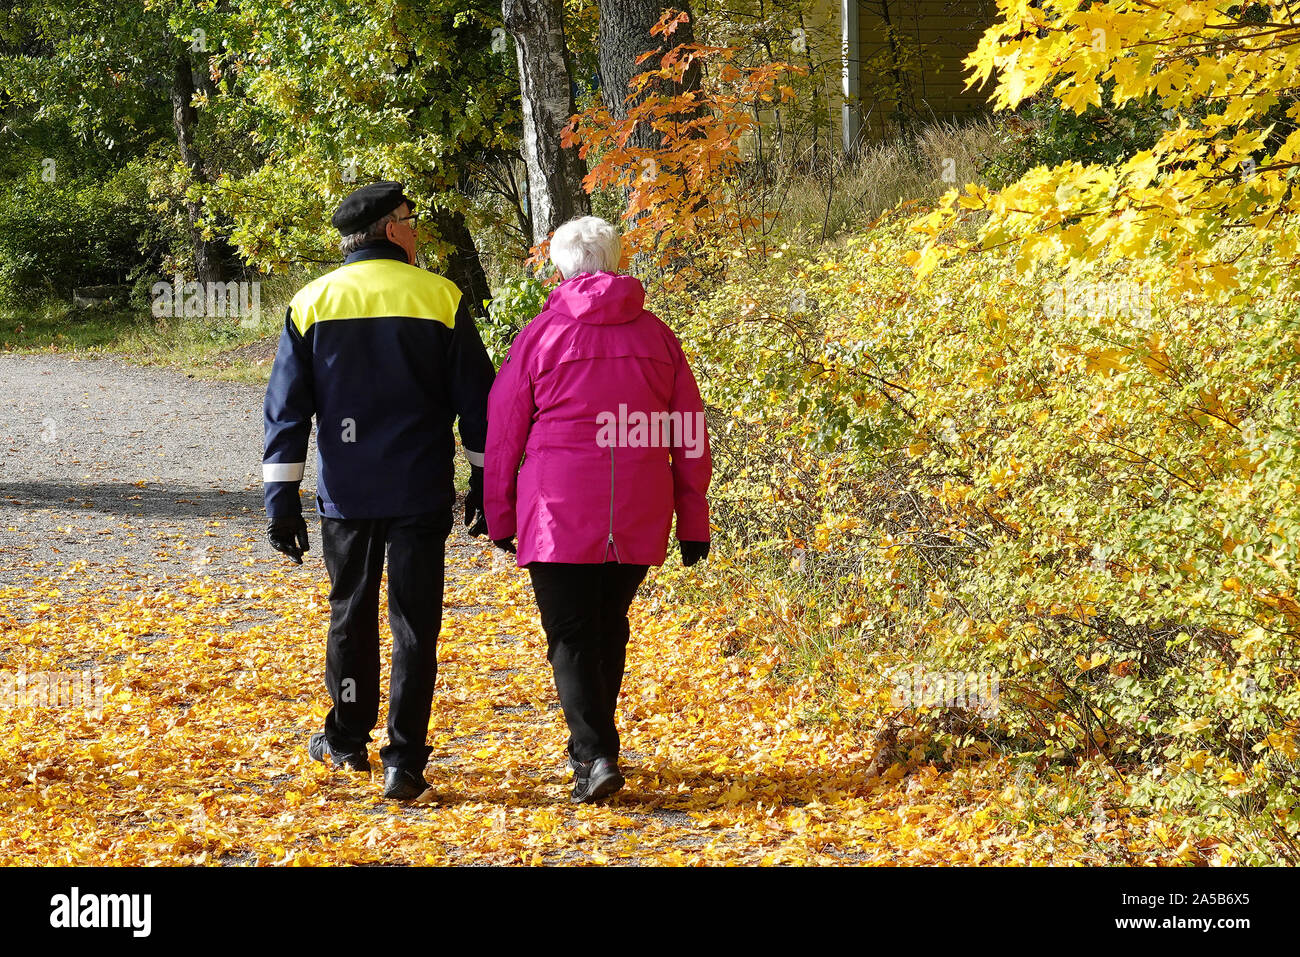 Turku, Finnland - 5. Oktober 2019: Älteres Paar zu Fuß auf dem Weg, Baum hat Blätter zu Gehweg fallengelassen. Lage: Insel Ruissalo Stockfoto